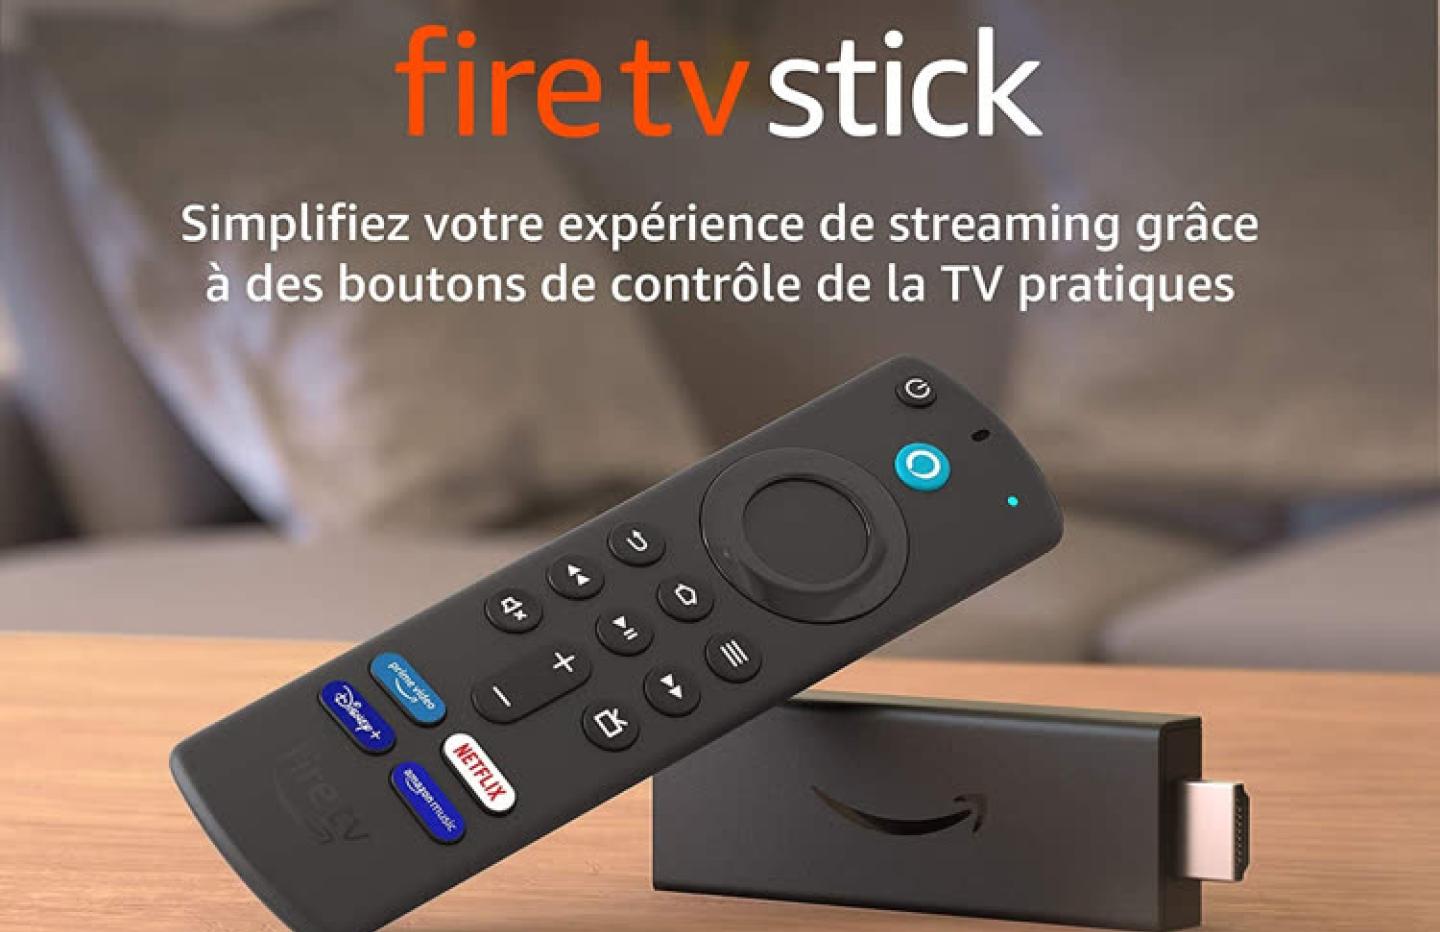  nouvelle vente flash incroyable sur le fameux Fire TV Stick - Le  Parisien